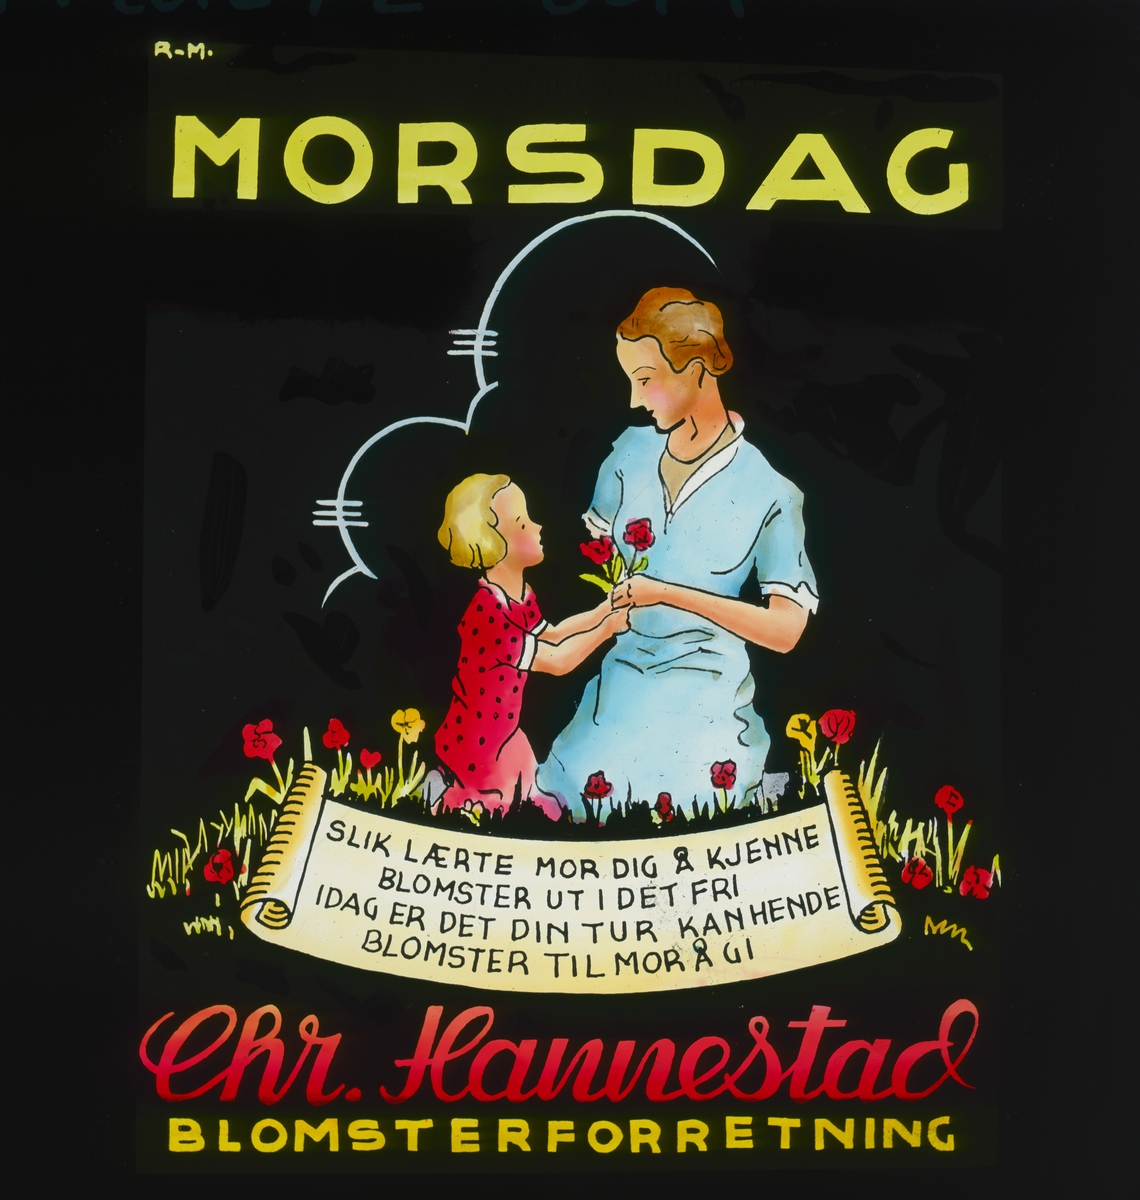 Grafisk kinoreklame fra 1950-årene i anledning morsdagen, med mor, barn og blomster, Chr. Hannestad sin logo og teksten
"Slik lærte mor dig å kjenne/ blomster uti det fri/ i dag er det din tur kanhende/ blomster til mor å gi."